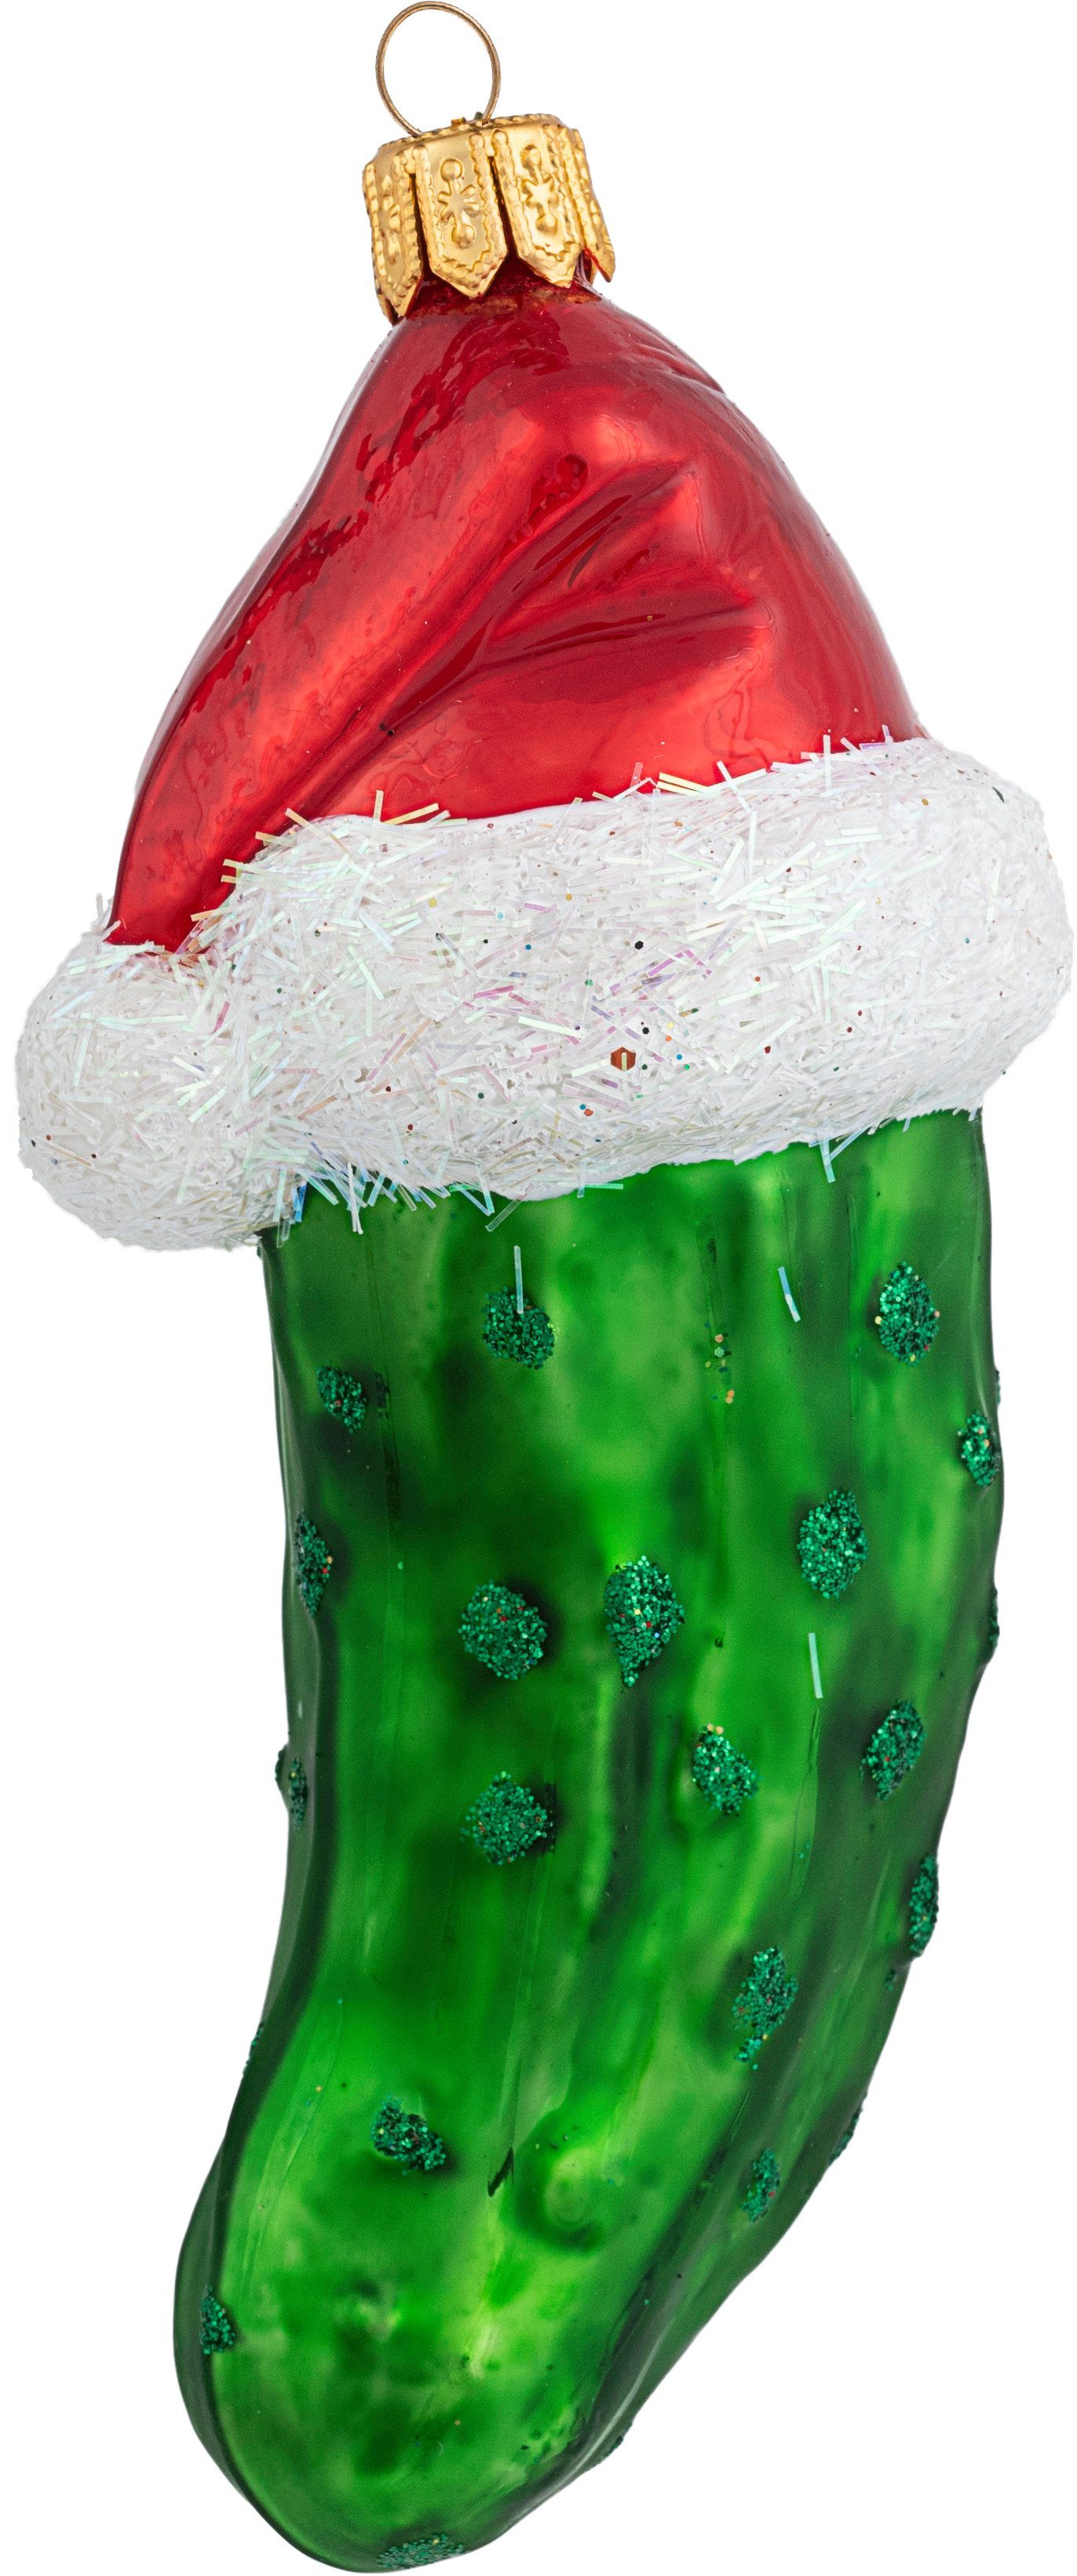 IMPULS Christbaumschmuck, Christbaumschmuck Weihnachtsgurke mit Mütze Glas 10cm grün | Dekohänger